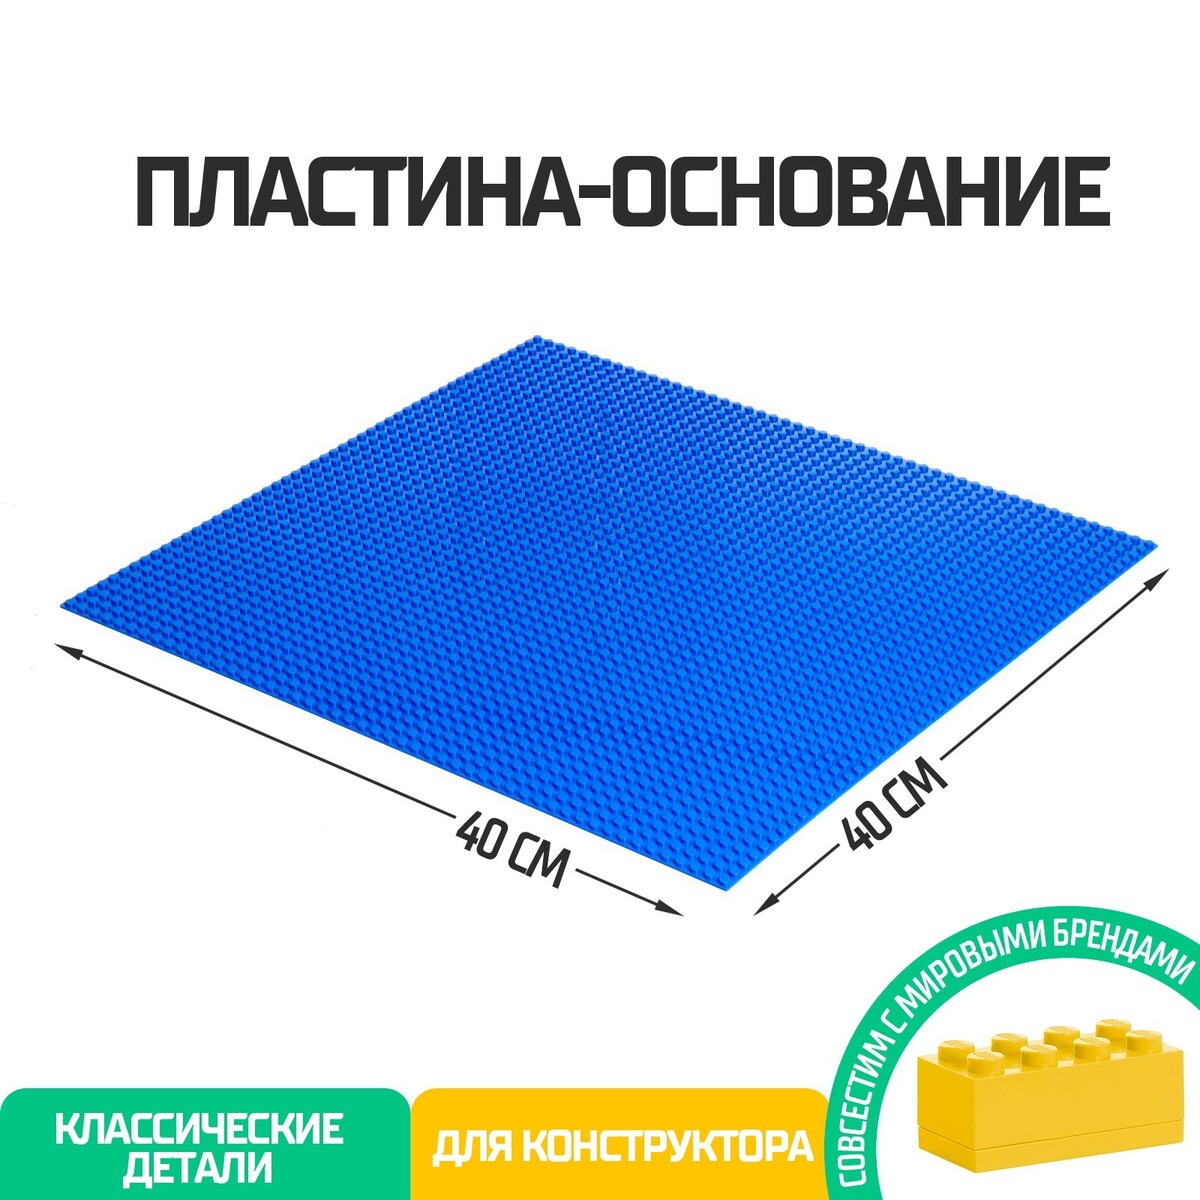 Пластина-основание для конструктора, 40 × 40 см, цвет синий браслет пластина